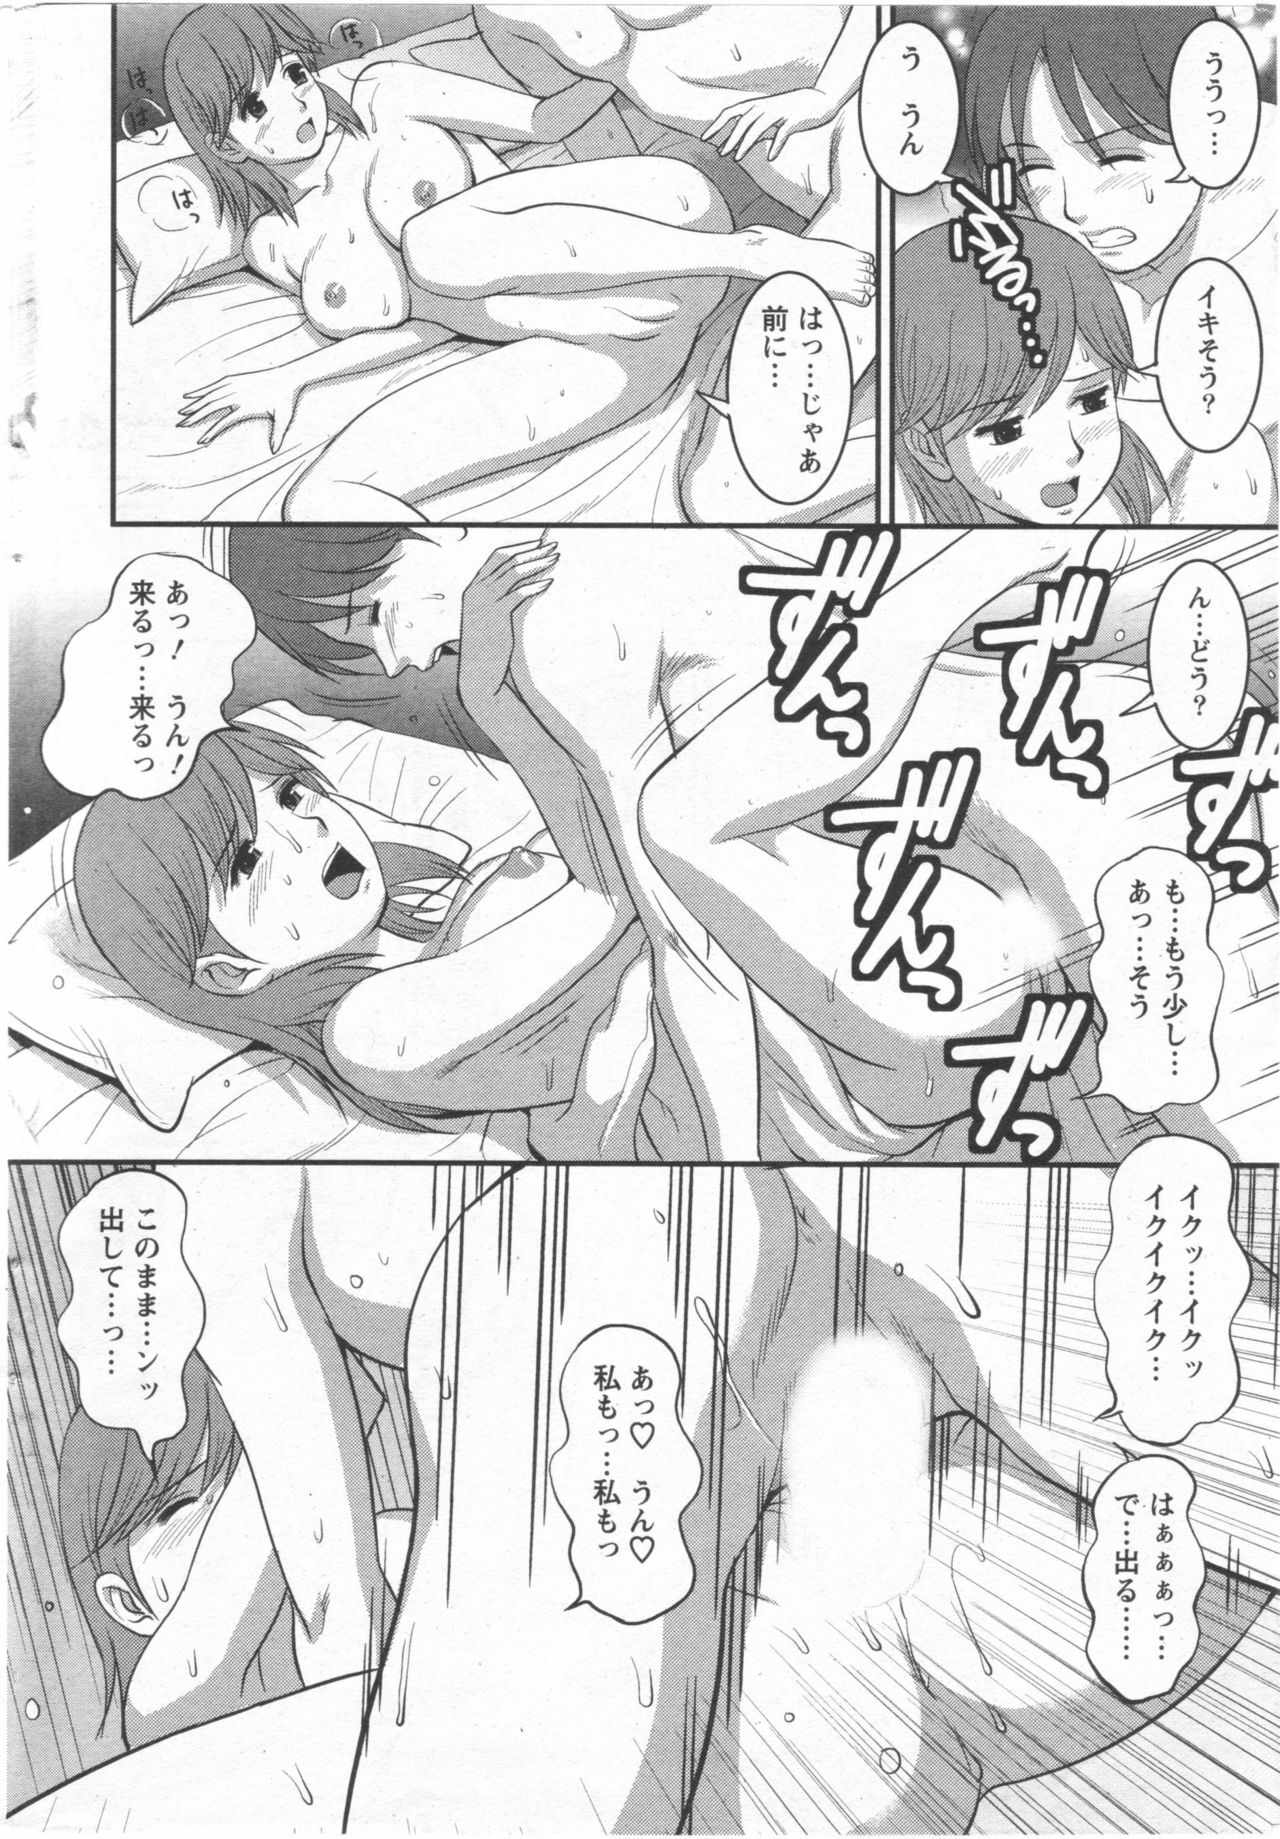 Haken no Muuko-san 10 [Saigado] page 17 full